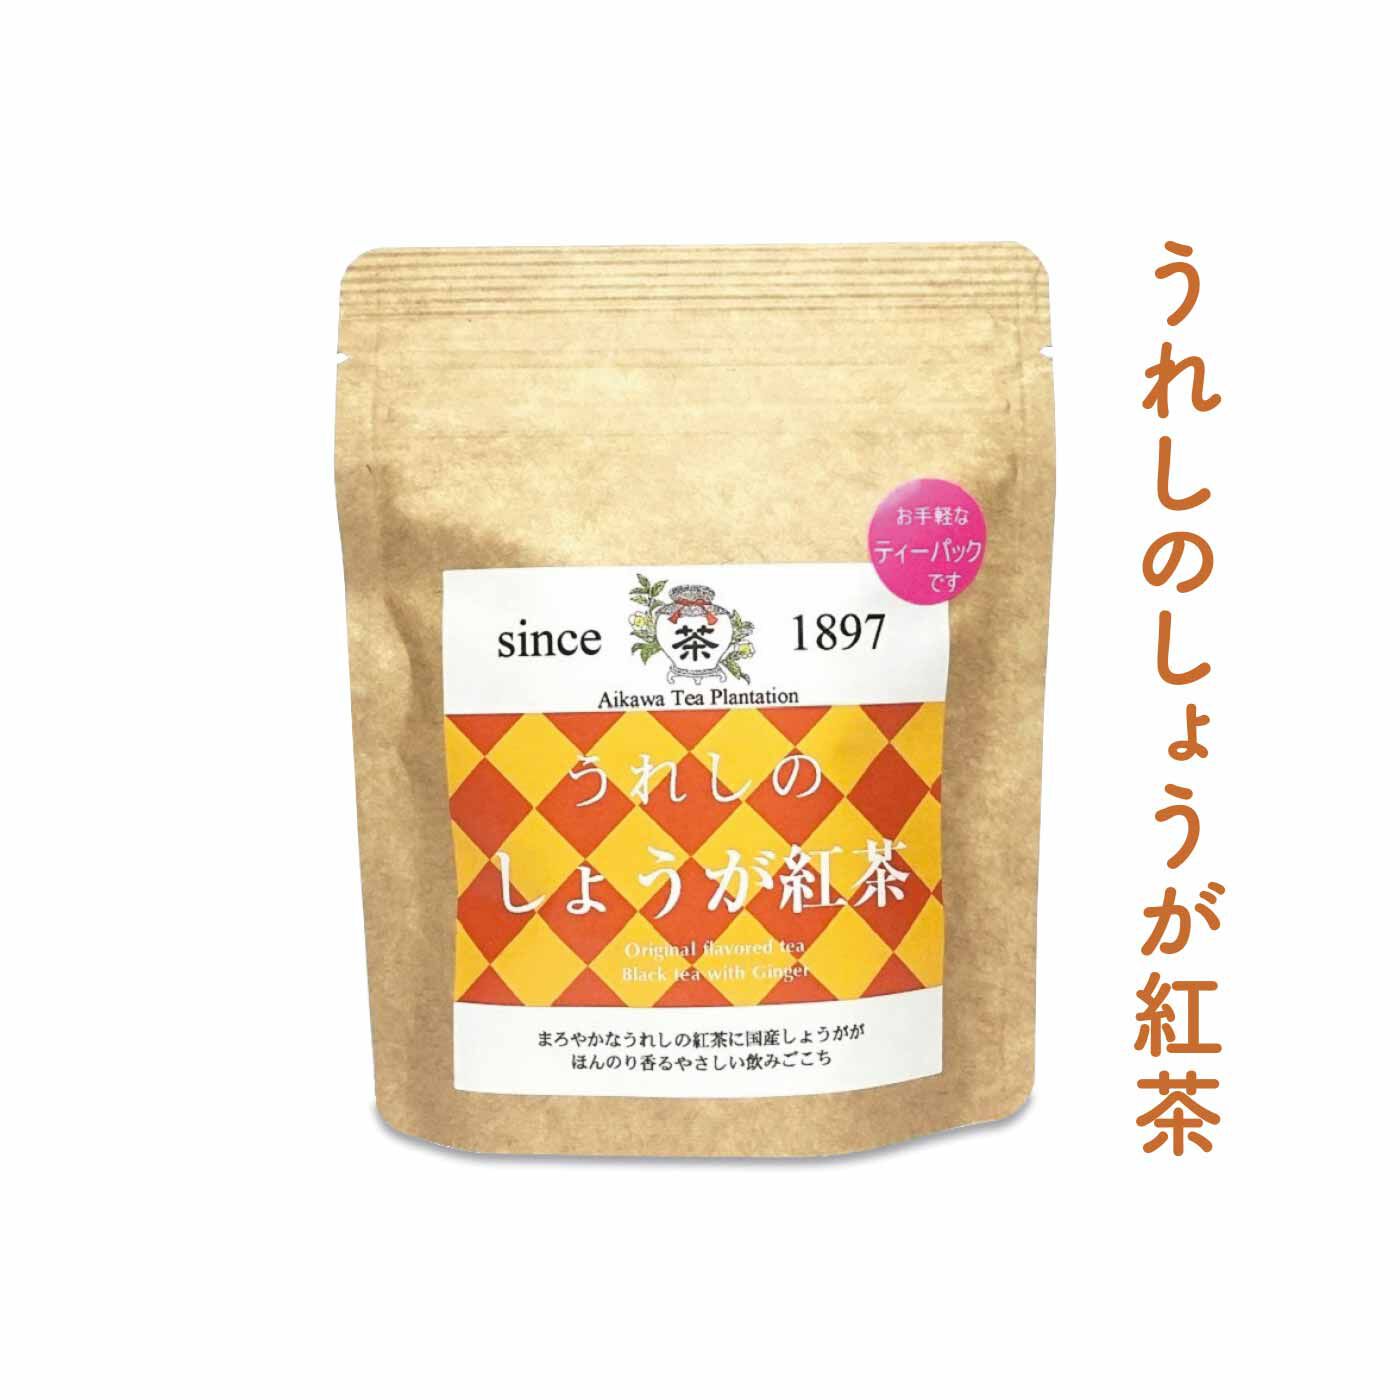 FELISSIMO PARTNERS|佐賀 相川製茶舗 いろんな味わいが楽しい うれしの茶の会（6回予約）|佐賀県産しょうがのほどよい刺激。